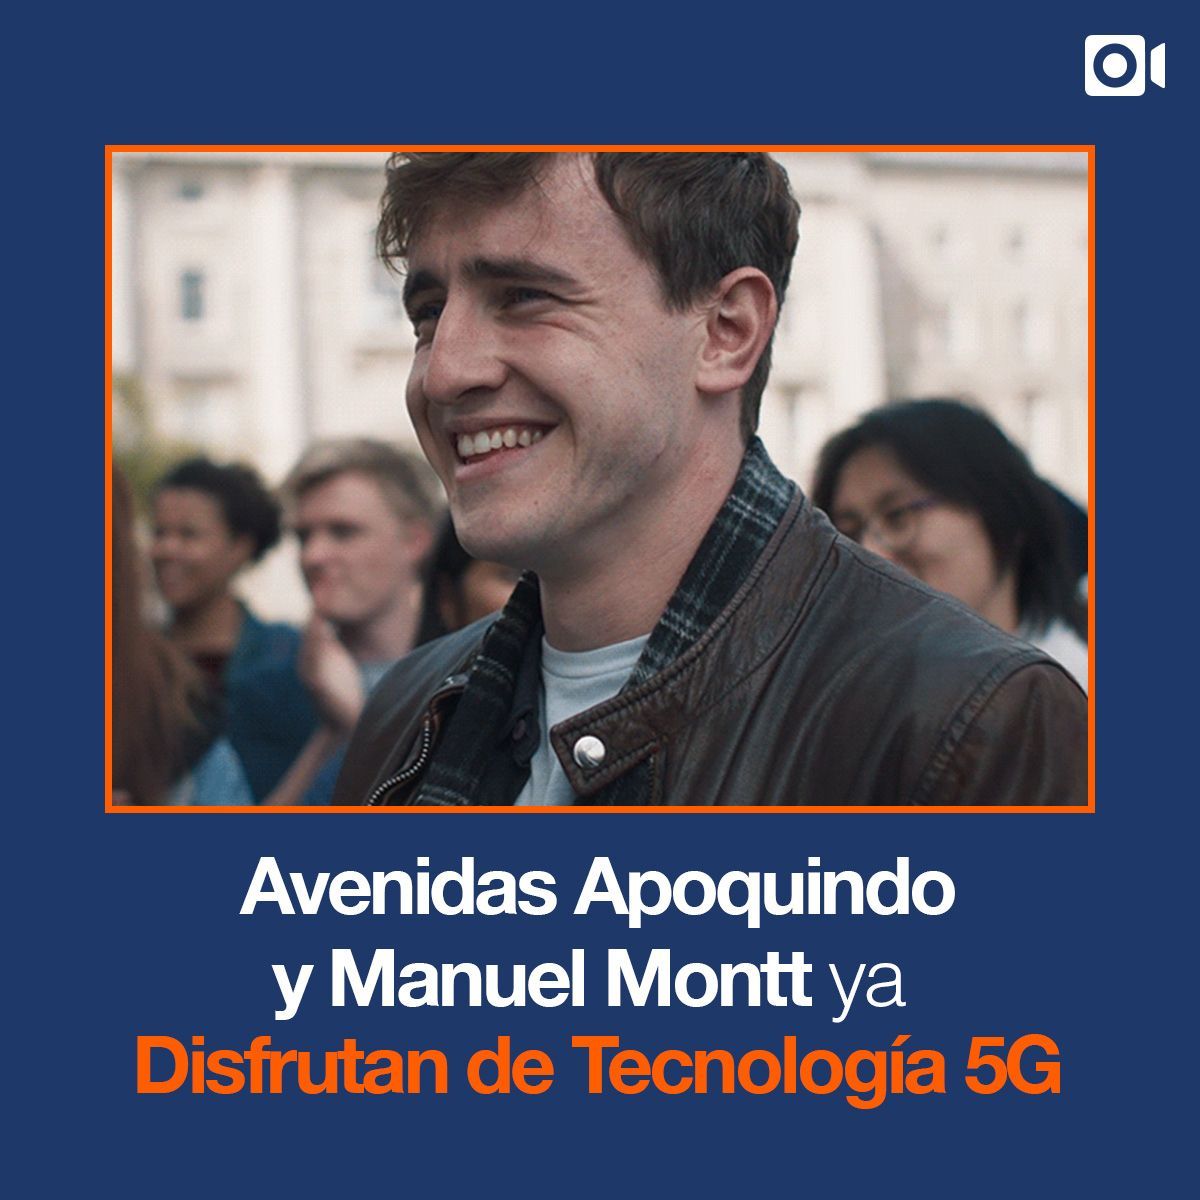 Avenidas Apoquindo y Manuel Montt ya Disfrutan de Tecnología 5G